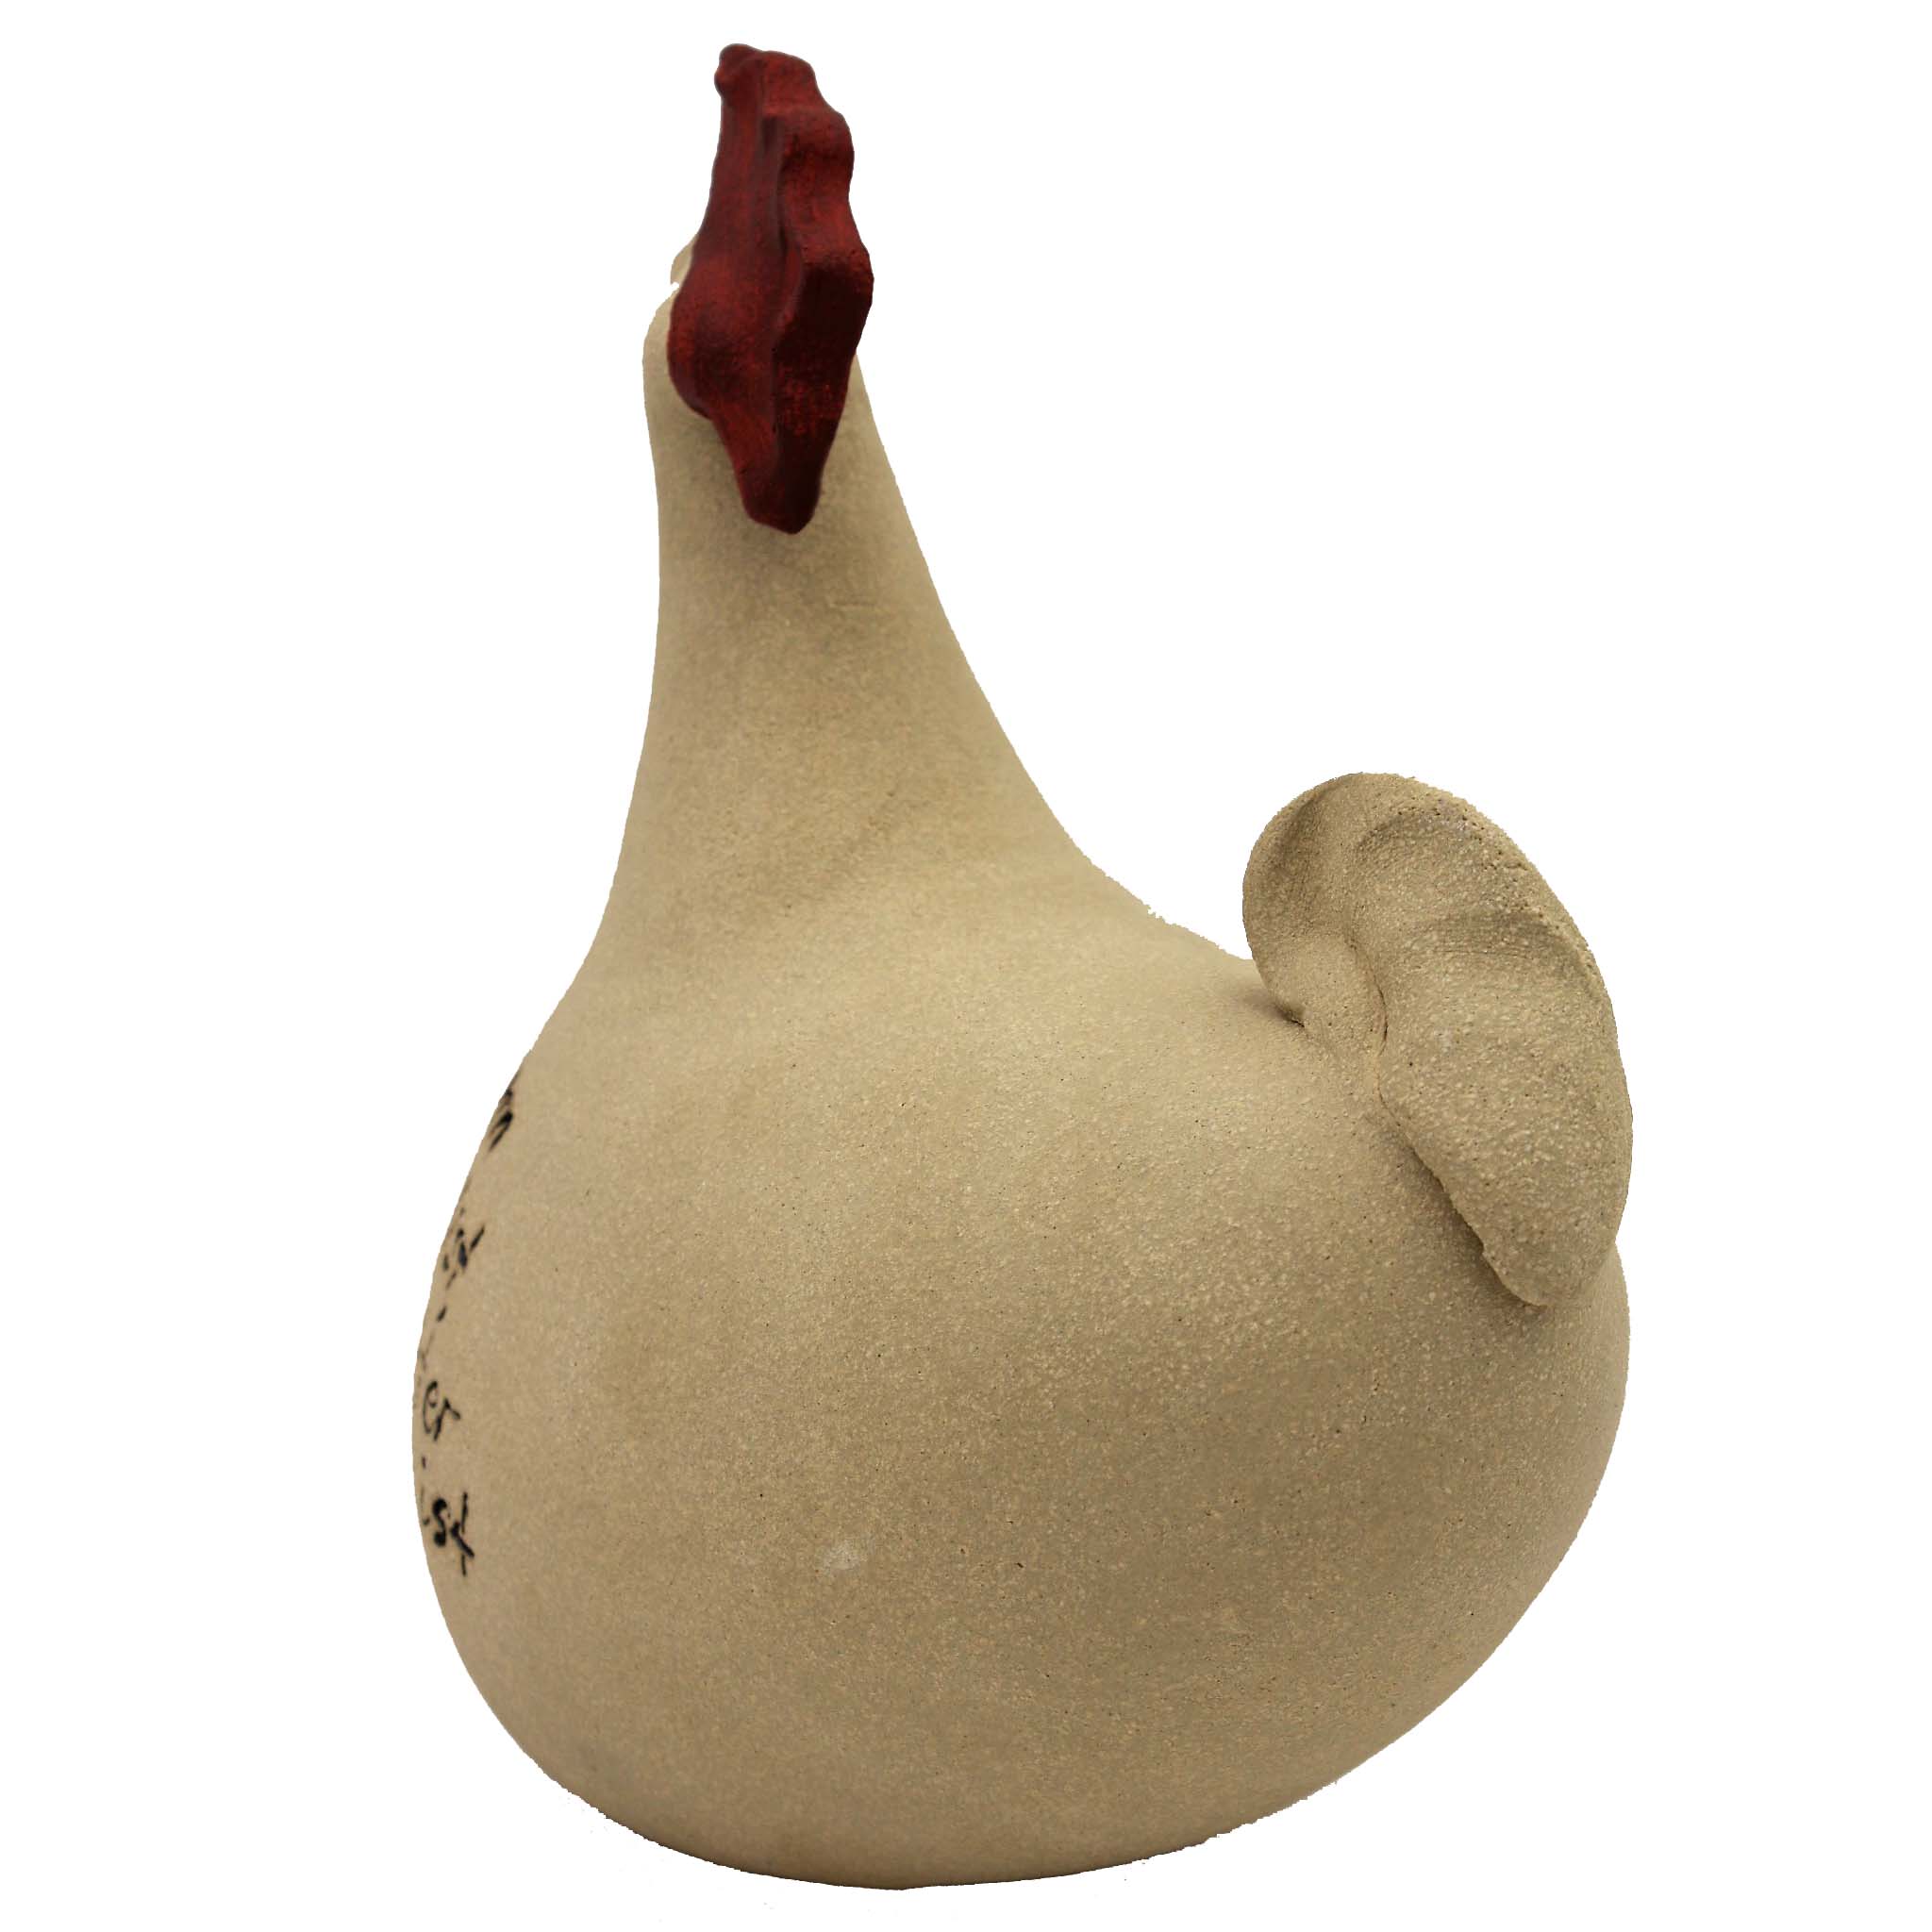 Deco rooster Burschikos, handmade decorative figure from clay